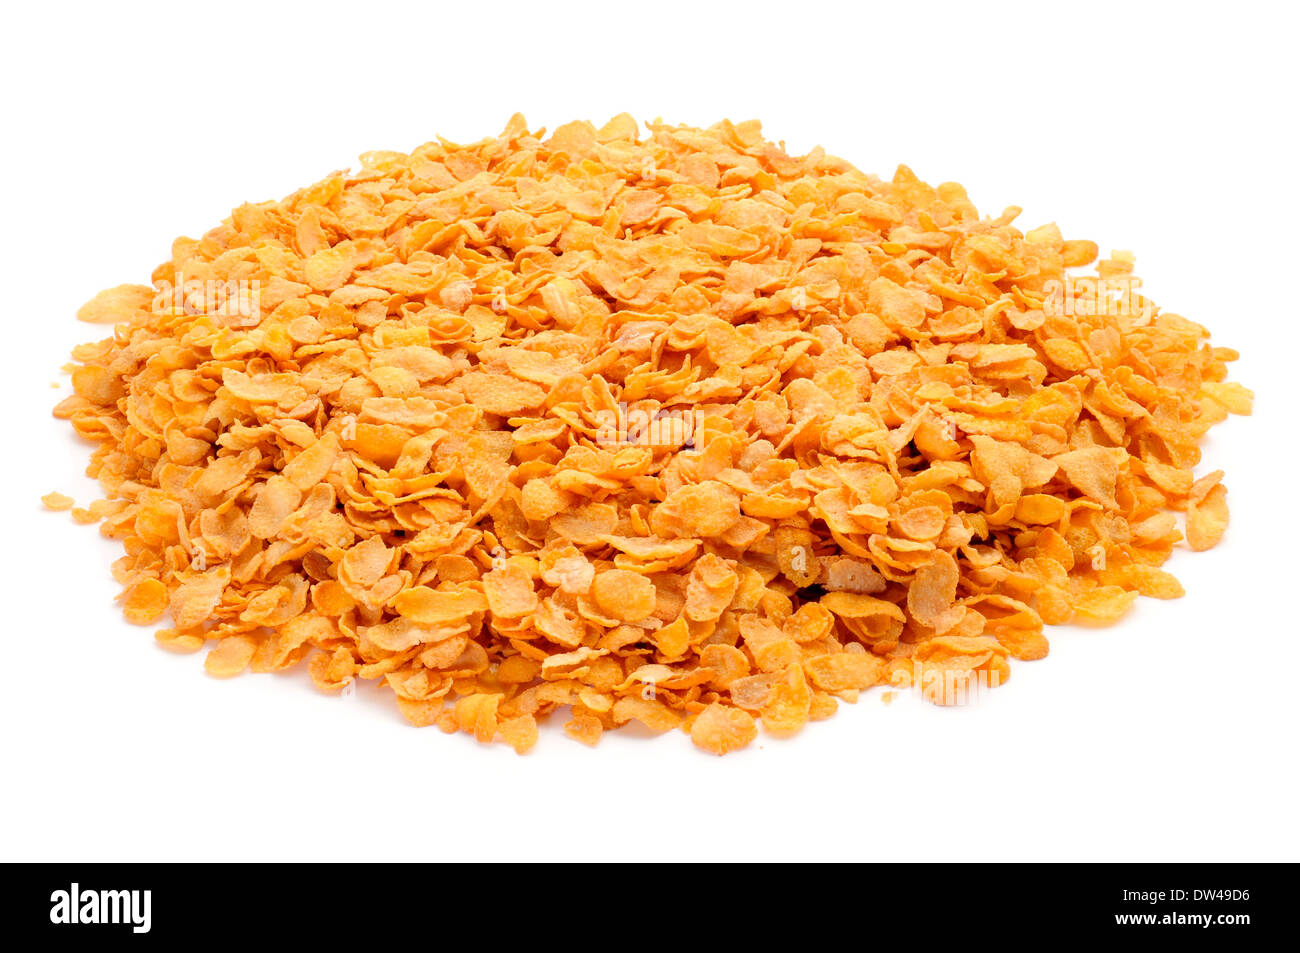 Un tas de flocons de maïs sur un fond blanc Banque D'Images